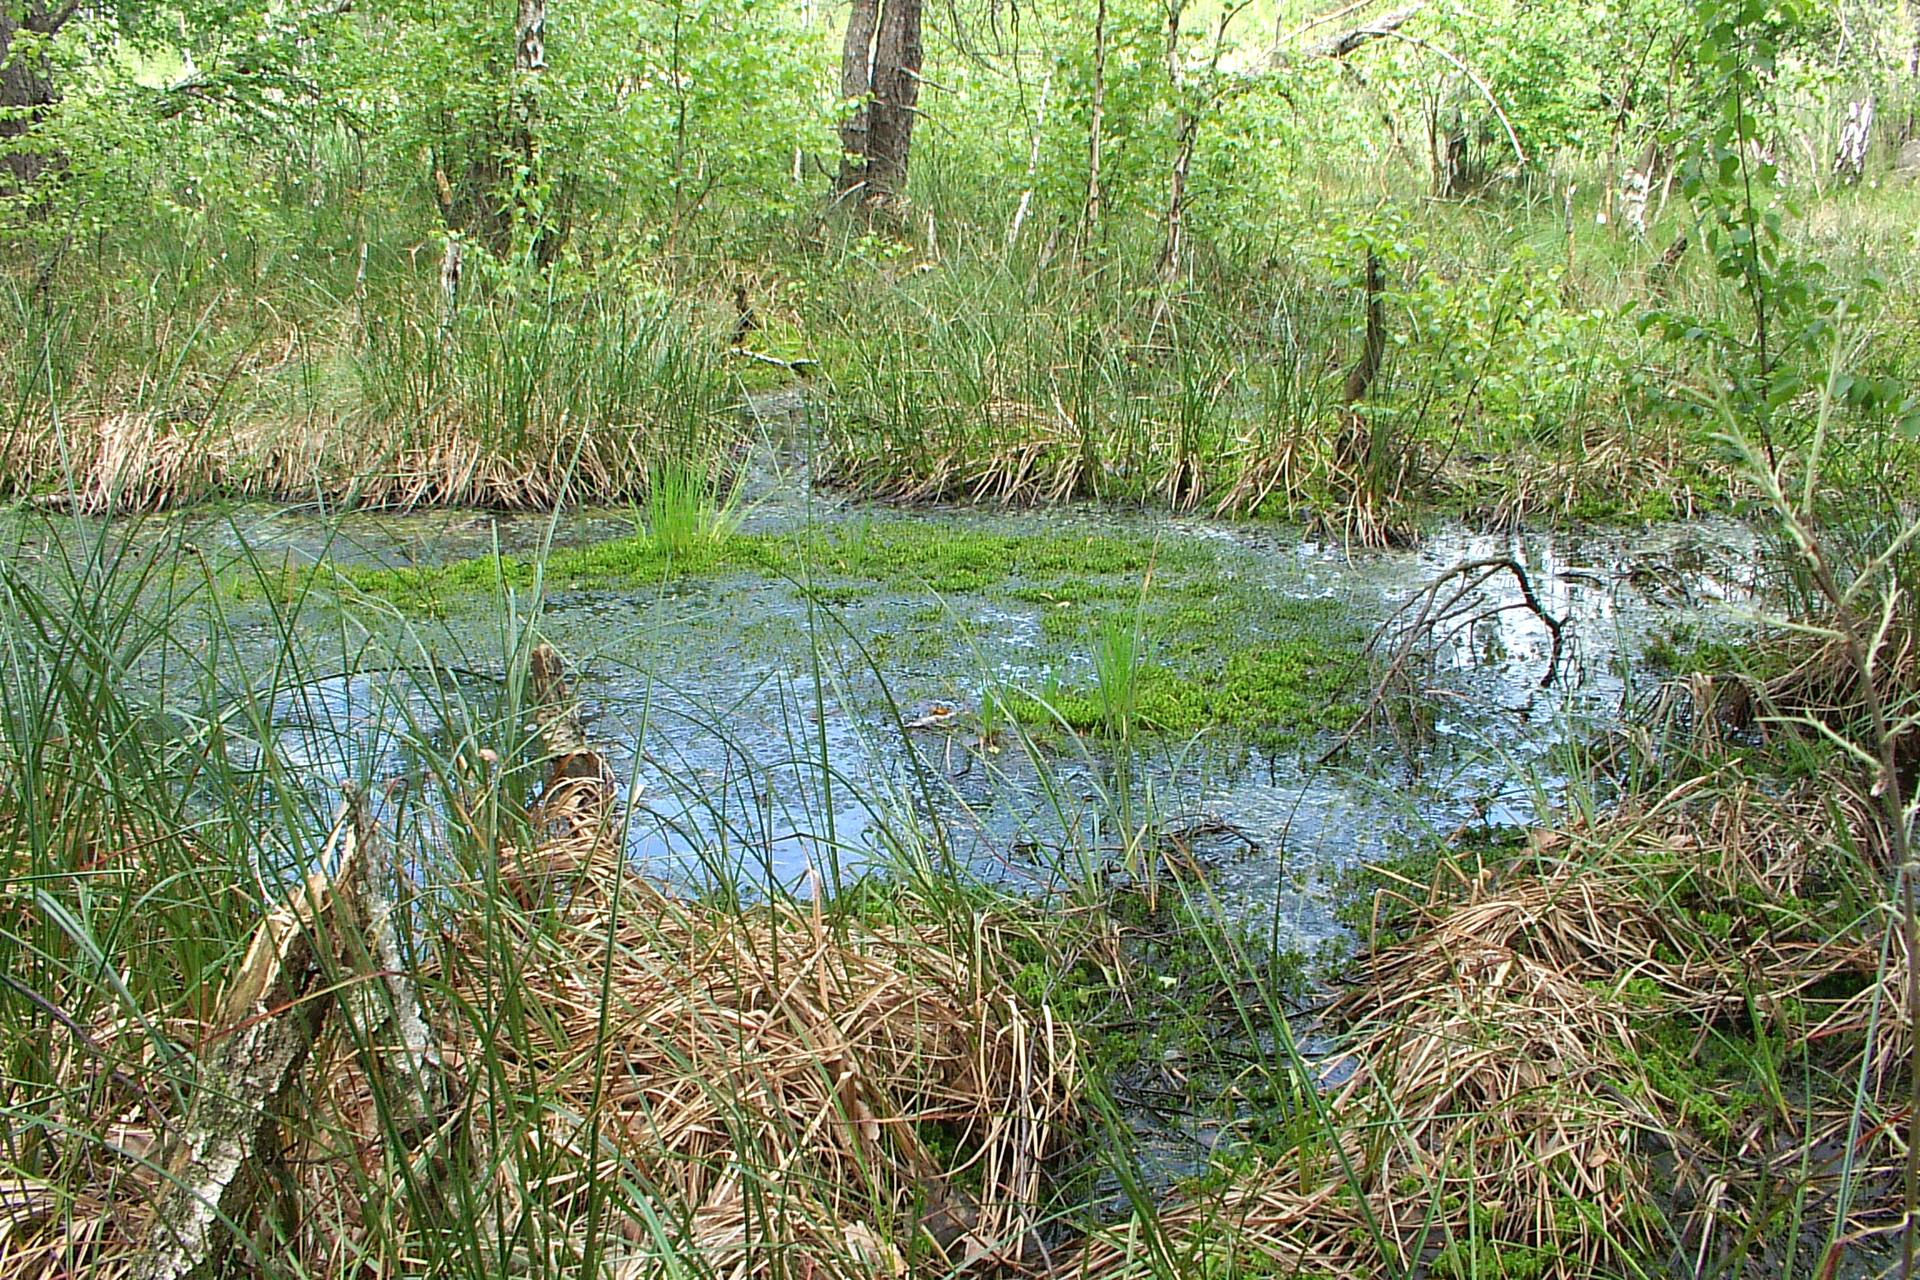 Fotografia prezentuje torfowisko. Widoczny podmokły teren porośnięty trawami. Niektóre trawy są suche. Centralna część zdjęcia ukazuje wodę pokrytą gdzieniegdzie zieloną roślinnością.   